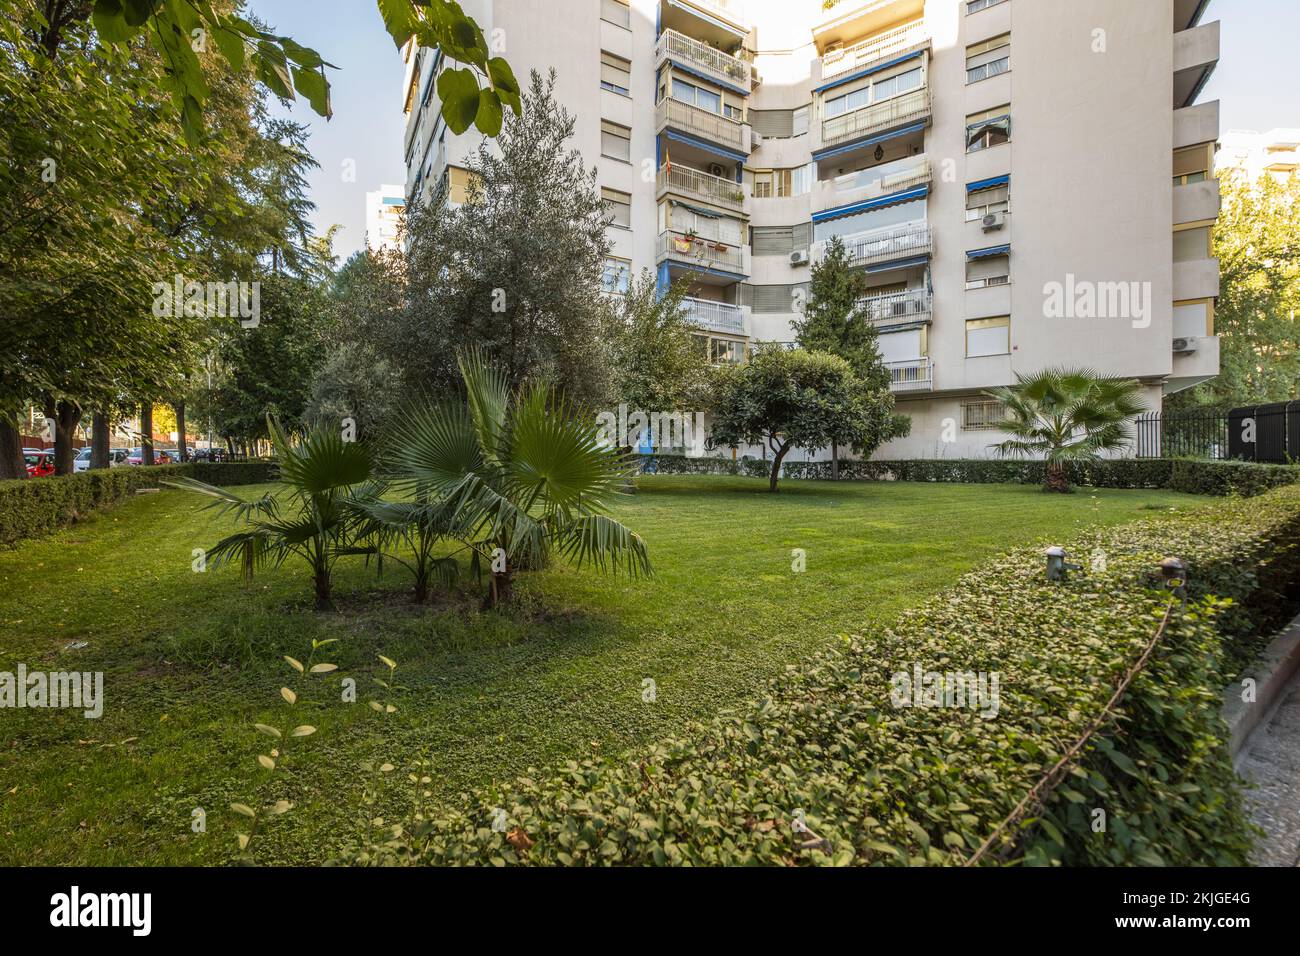 Jardin avec haies et palmiers au pied de certains bâtiments avec terrasses avec auvents bleus Banque D'Images